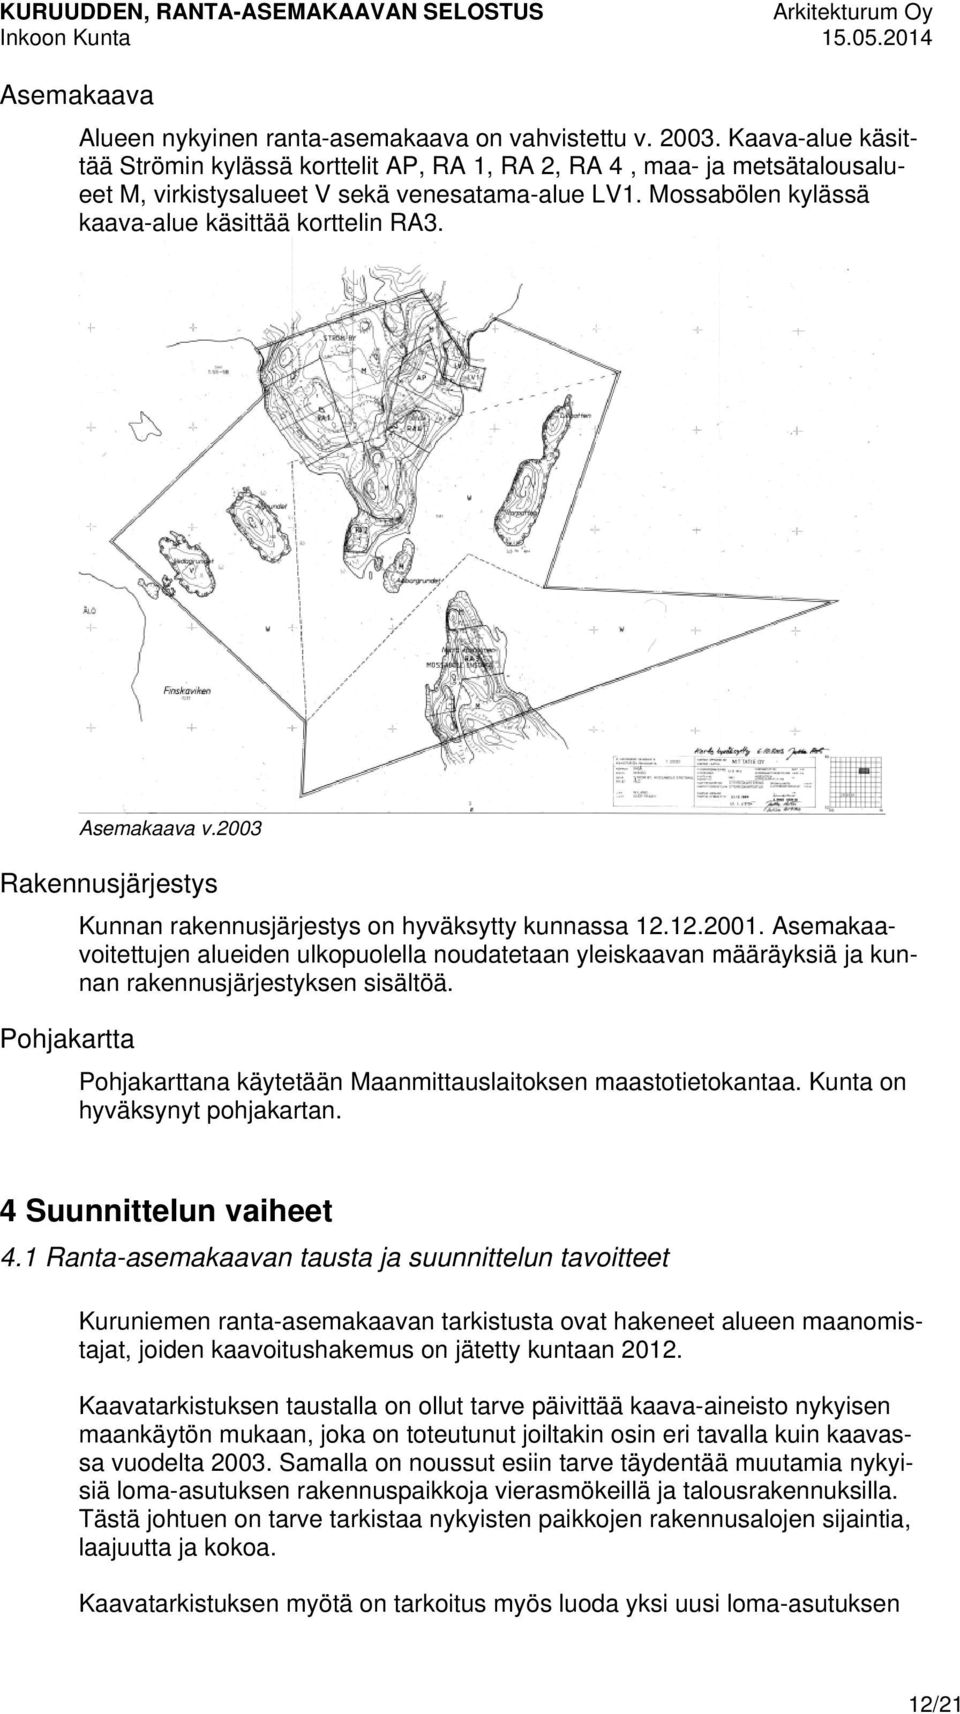 Asemakaava v.2003 Rakennusjärjestys Pohjakartta Kunnan rakennusjärjestys on hyväksytty kunnassa 12.12.2001.